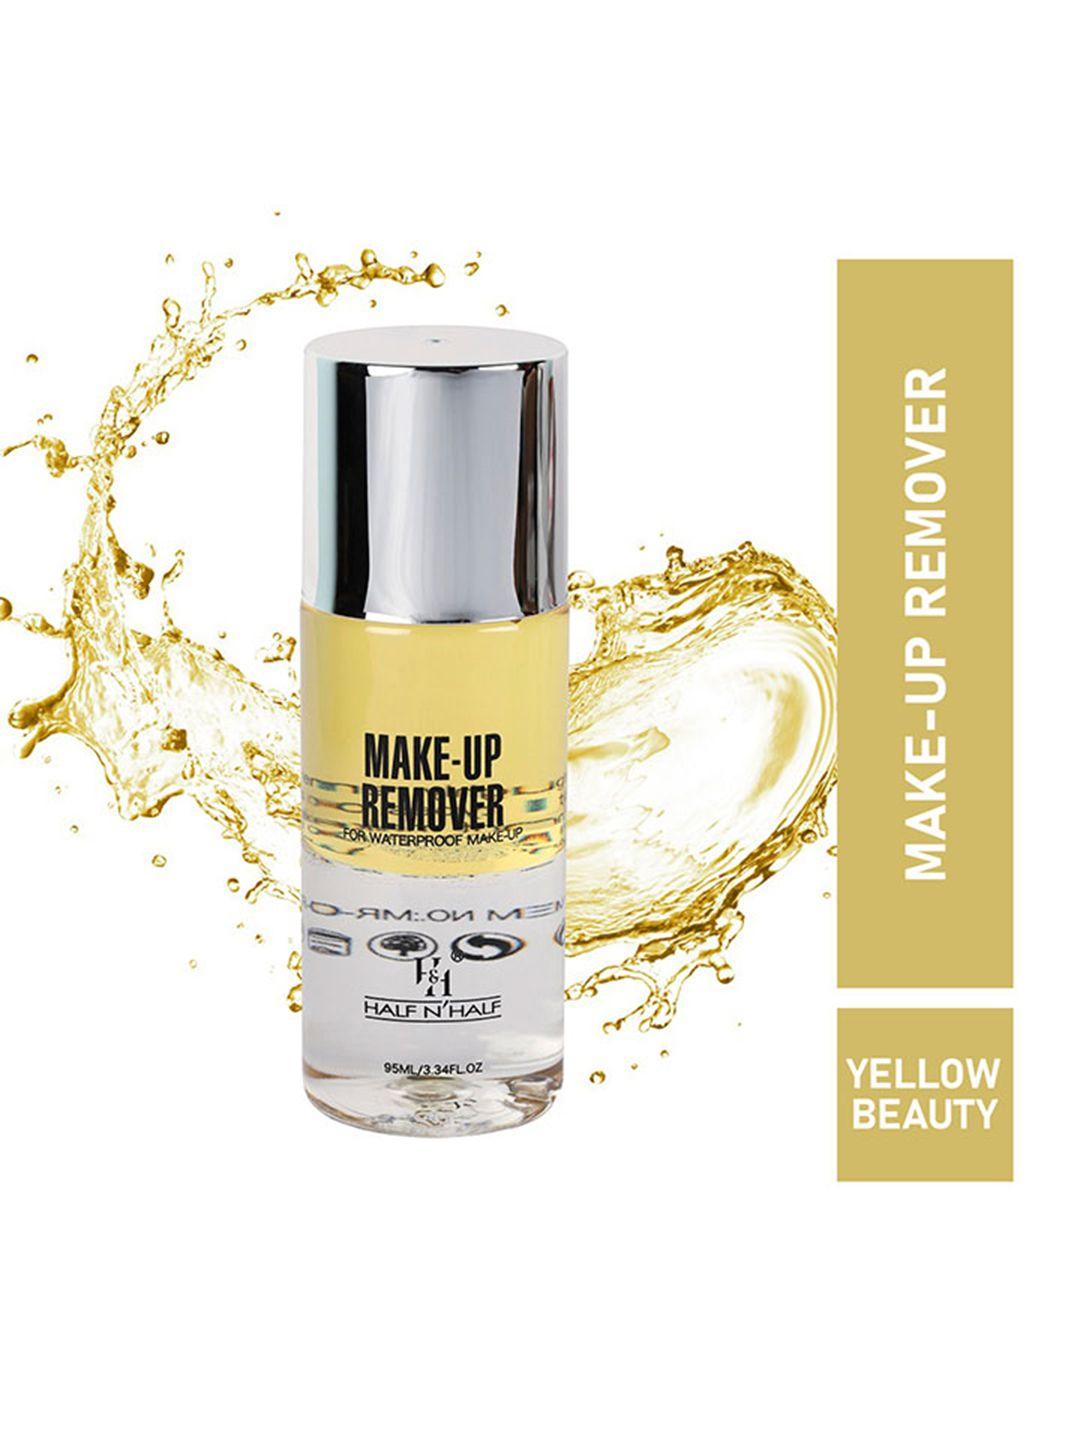 half n half makeup remover for waterproof makeup, yellow beauty (45gm)